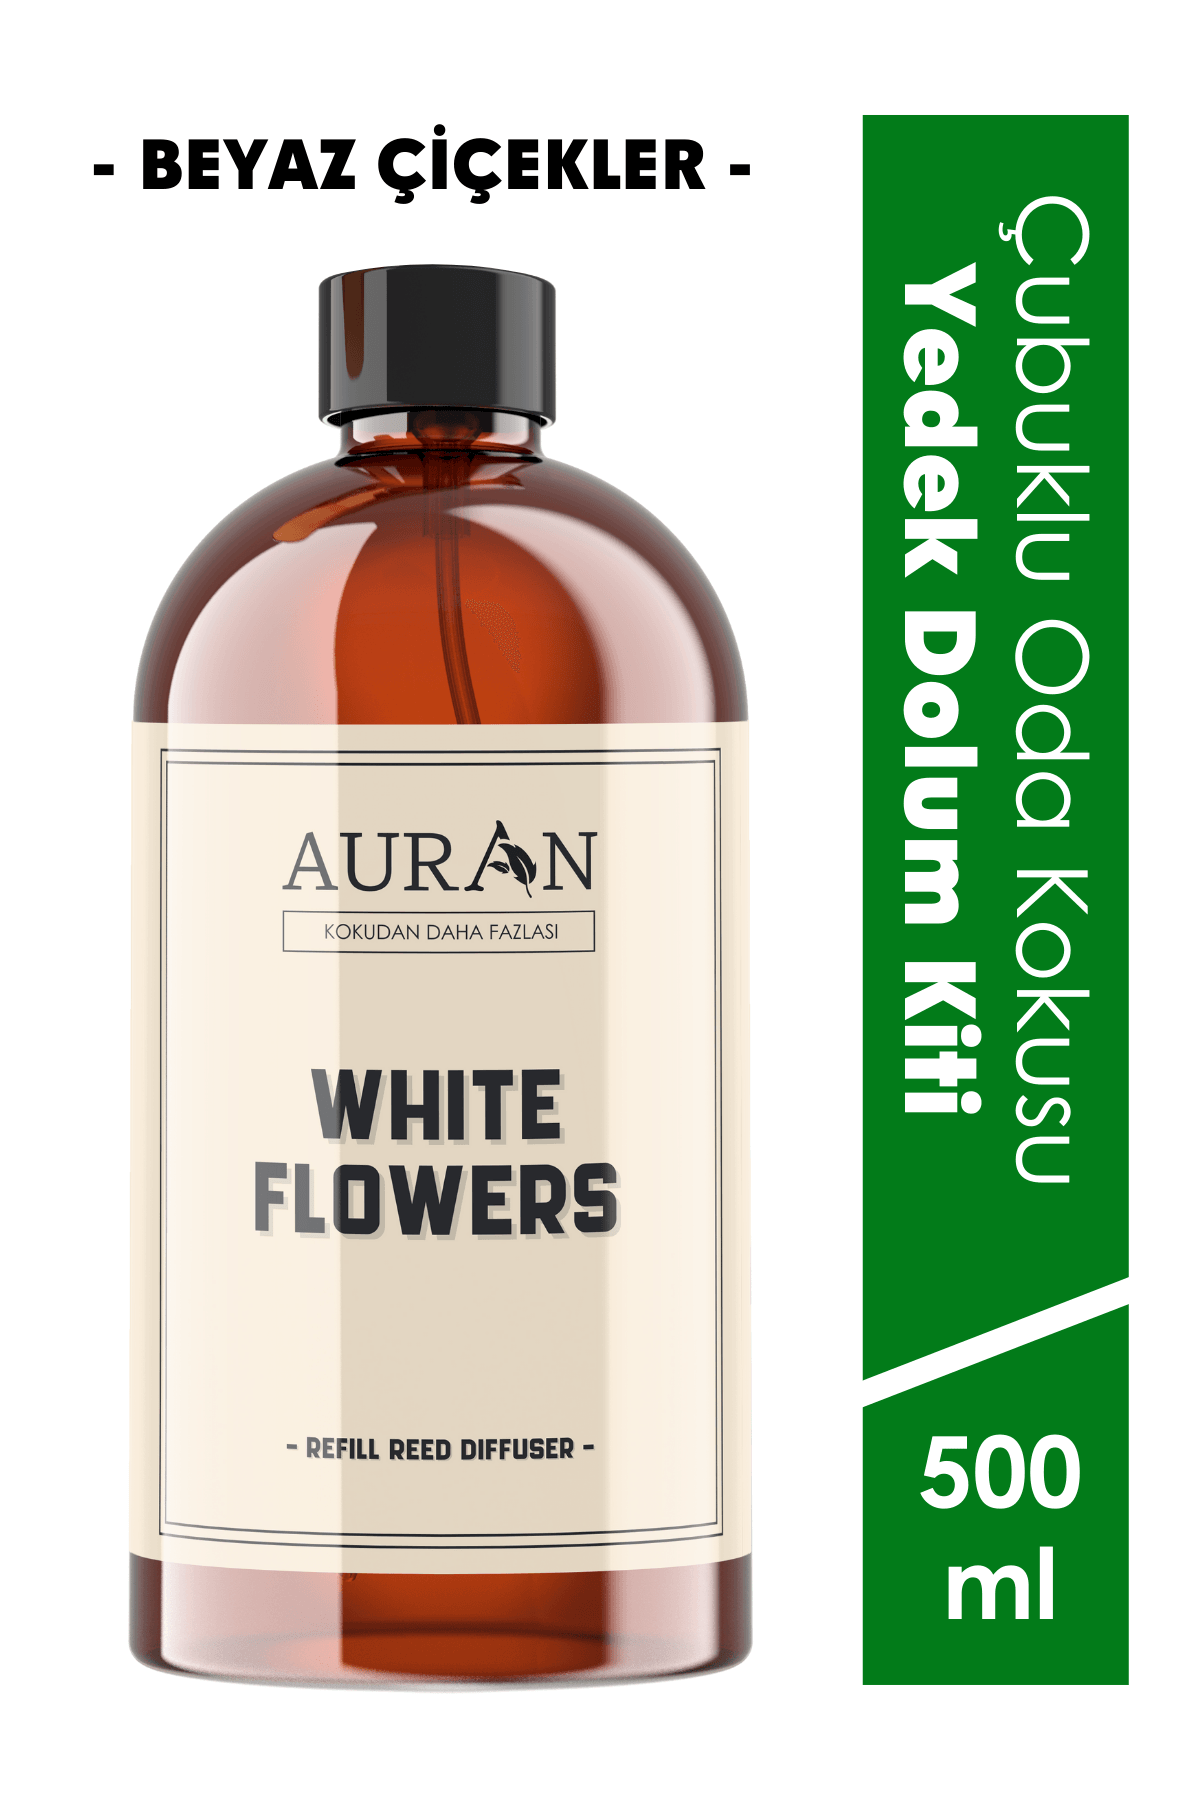 Beyaz Çiçekler Yedek Çubuklu Oda Ve Ortam Kokusu Esansı Yedek Dolum Şişe White Flowers 500ml